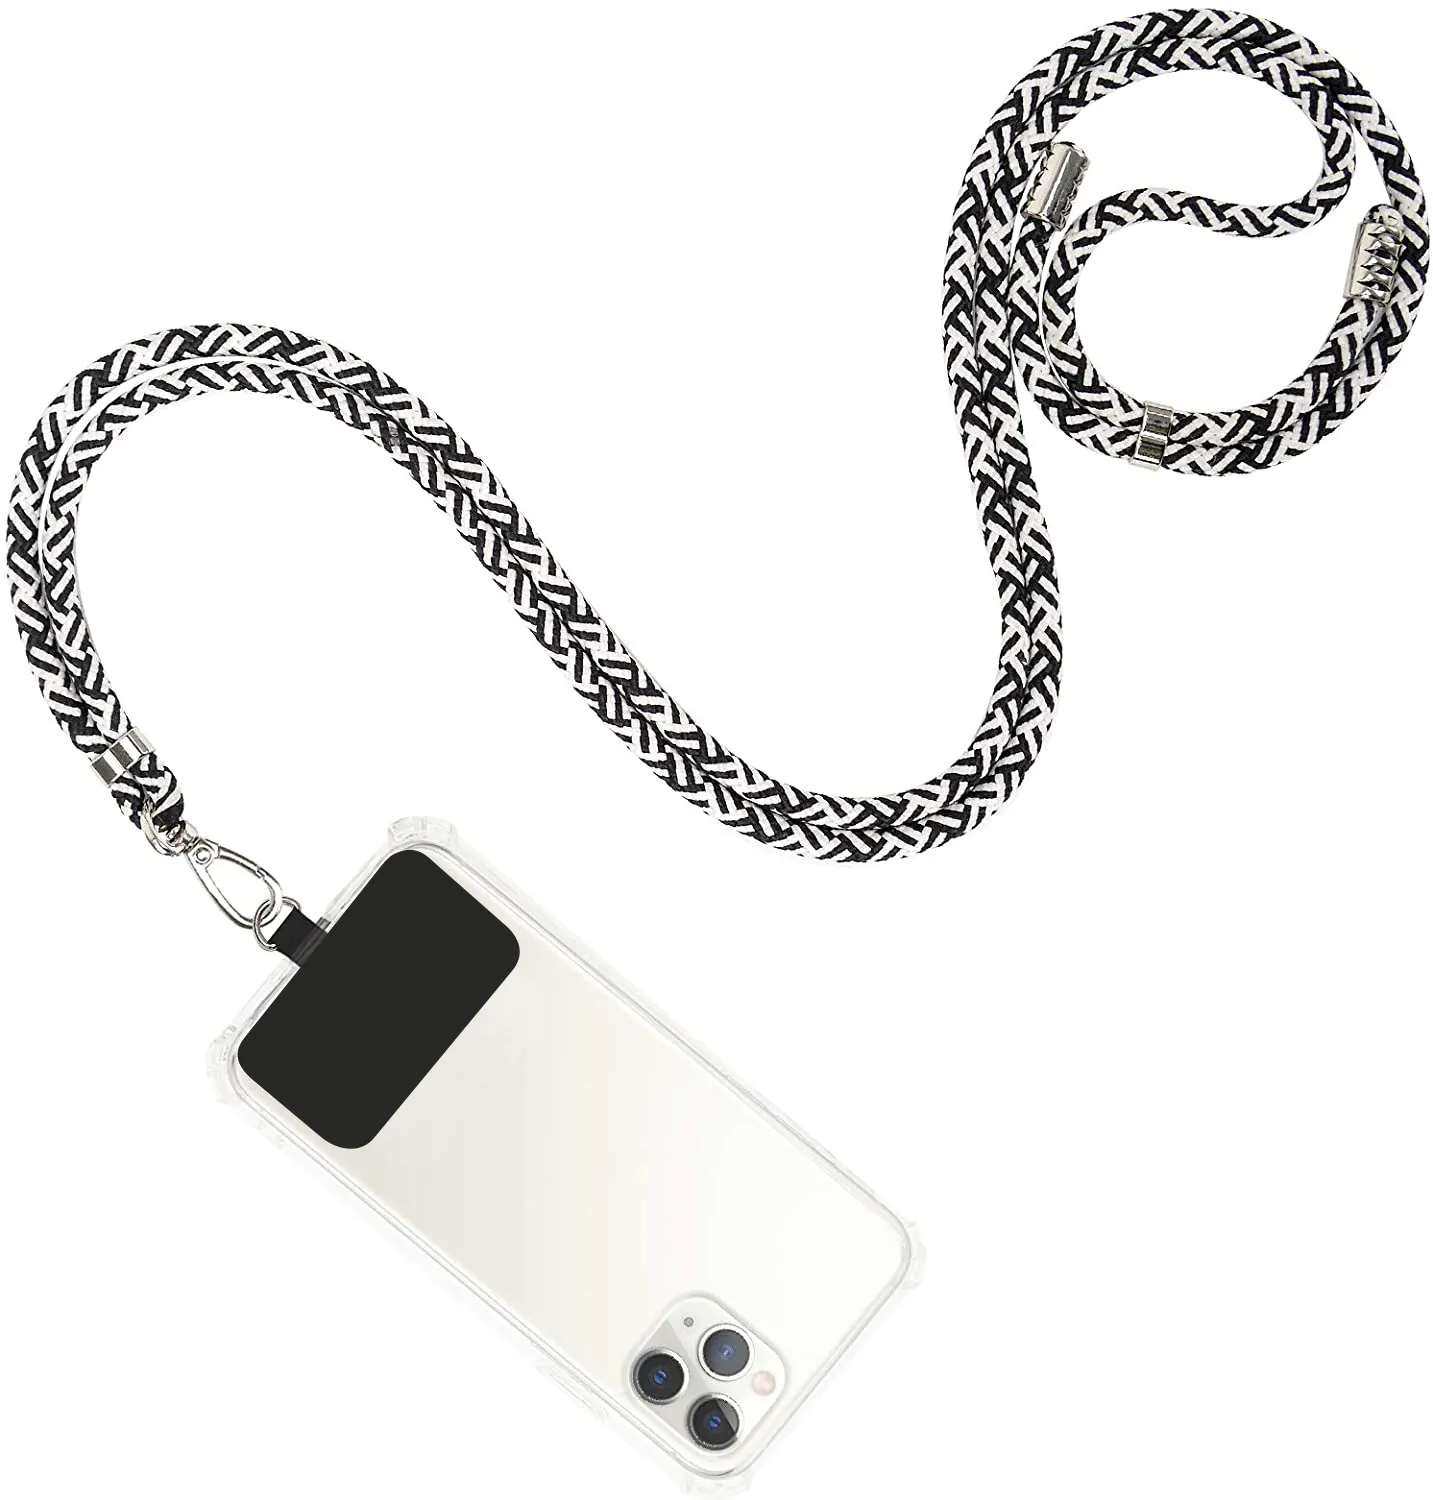 TENCHEN ремешок для телефона держатель плечевой веревки универсальный кросс-боди чехол для телефона для iPhone